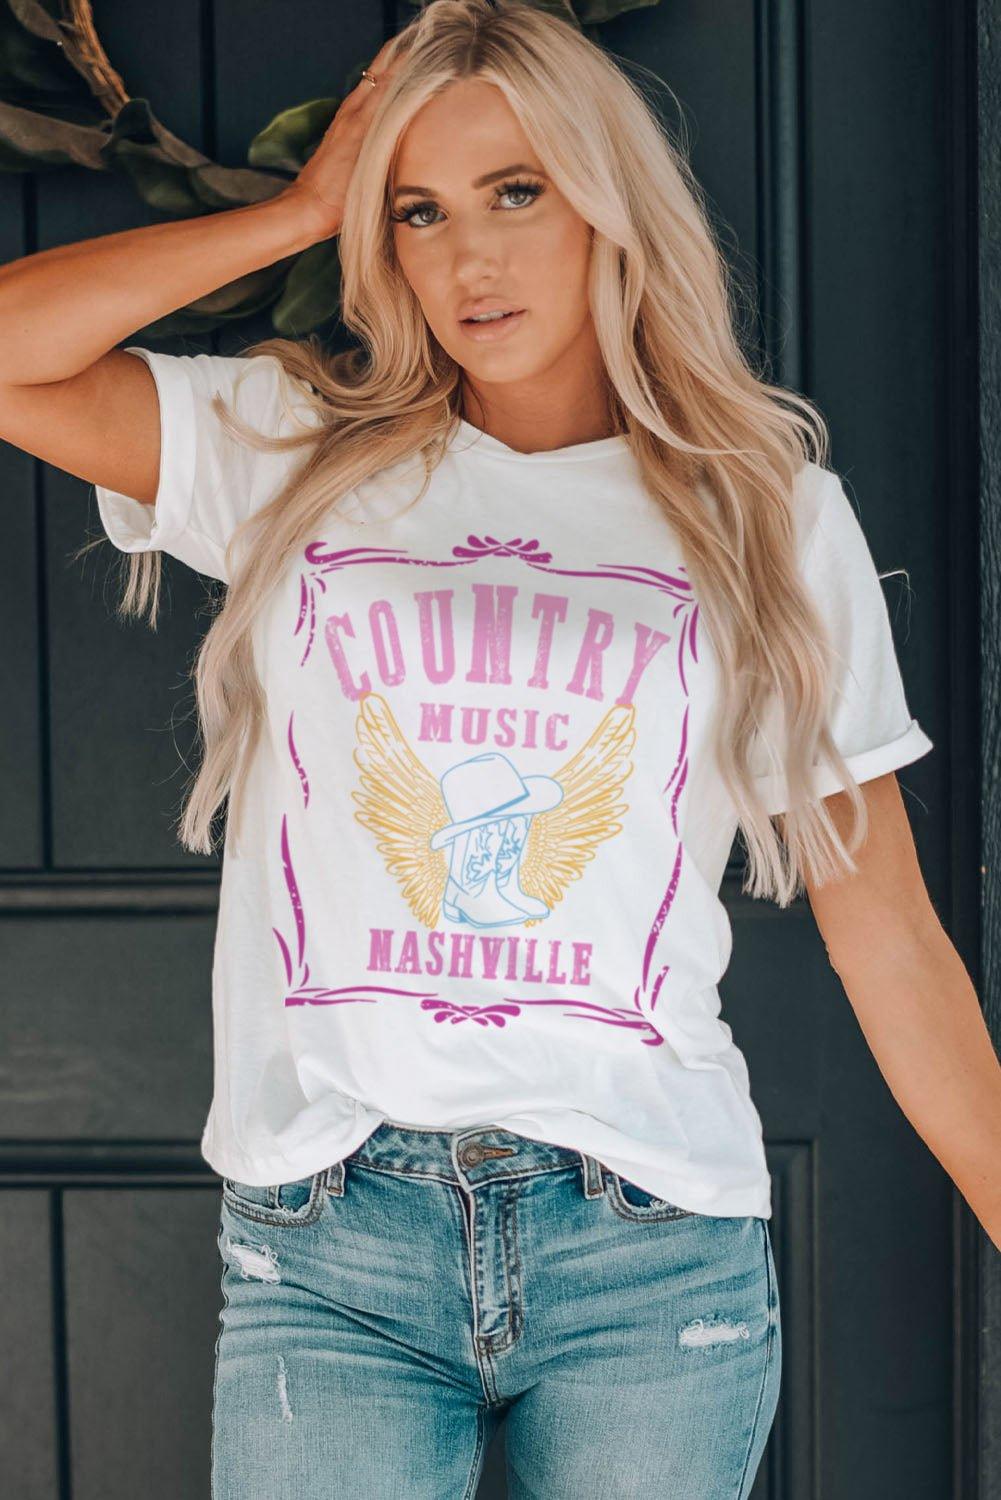 "COUNTRY MUSIC NASHVILLE" Graphic Shirt - Klazzi Fashion Boutique